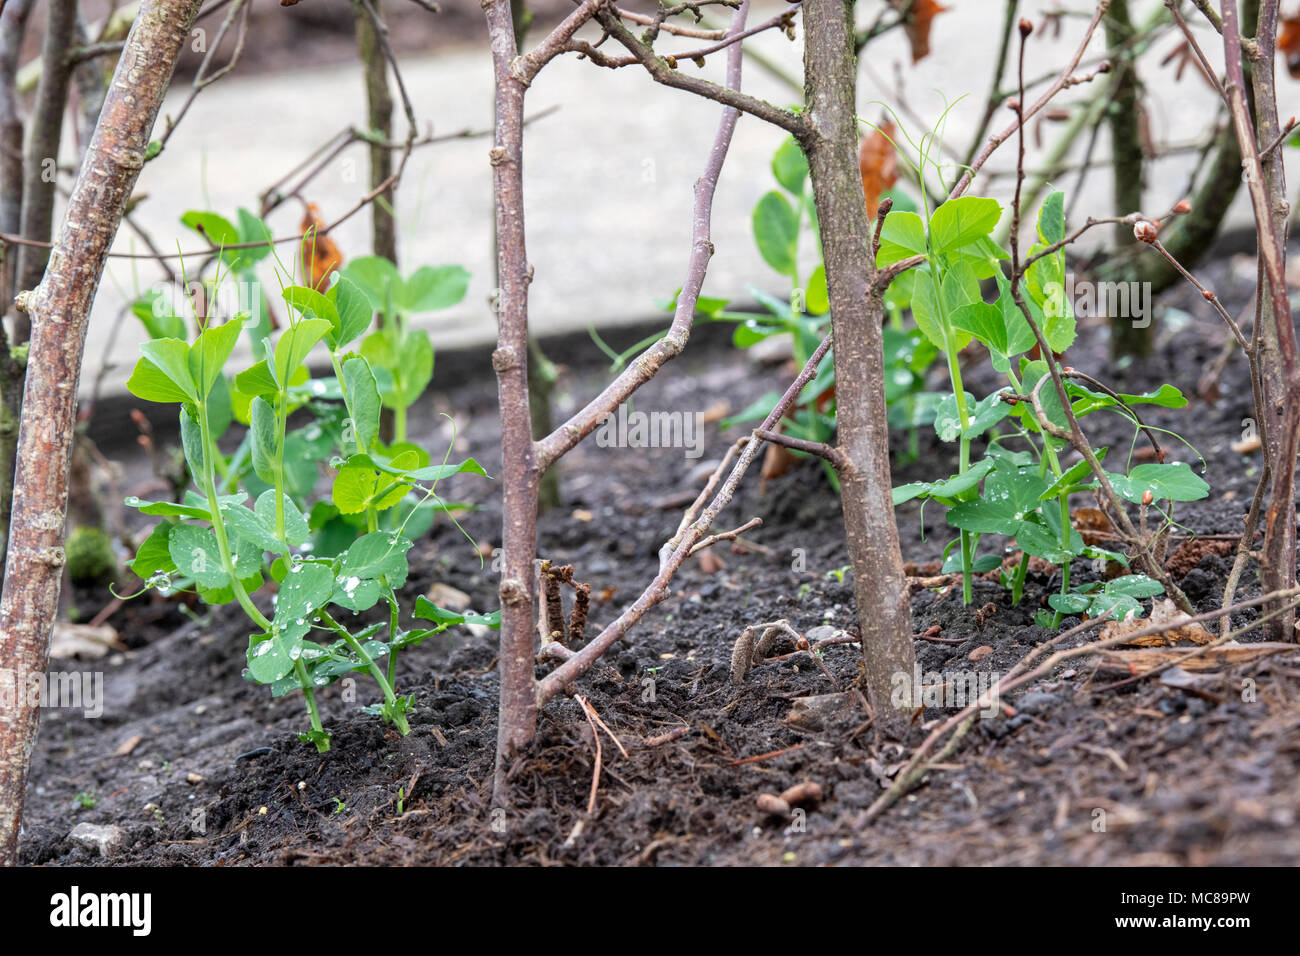 Lathyrus Odoratus 'Kelvedon Wonder'. Sweet pea 'Kelvedon Wonder' zwischen den cut Hazel tree branch unterstützt/Hasel Stangen in einem Gemüsegarten. Stockfoto